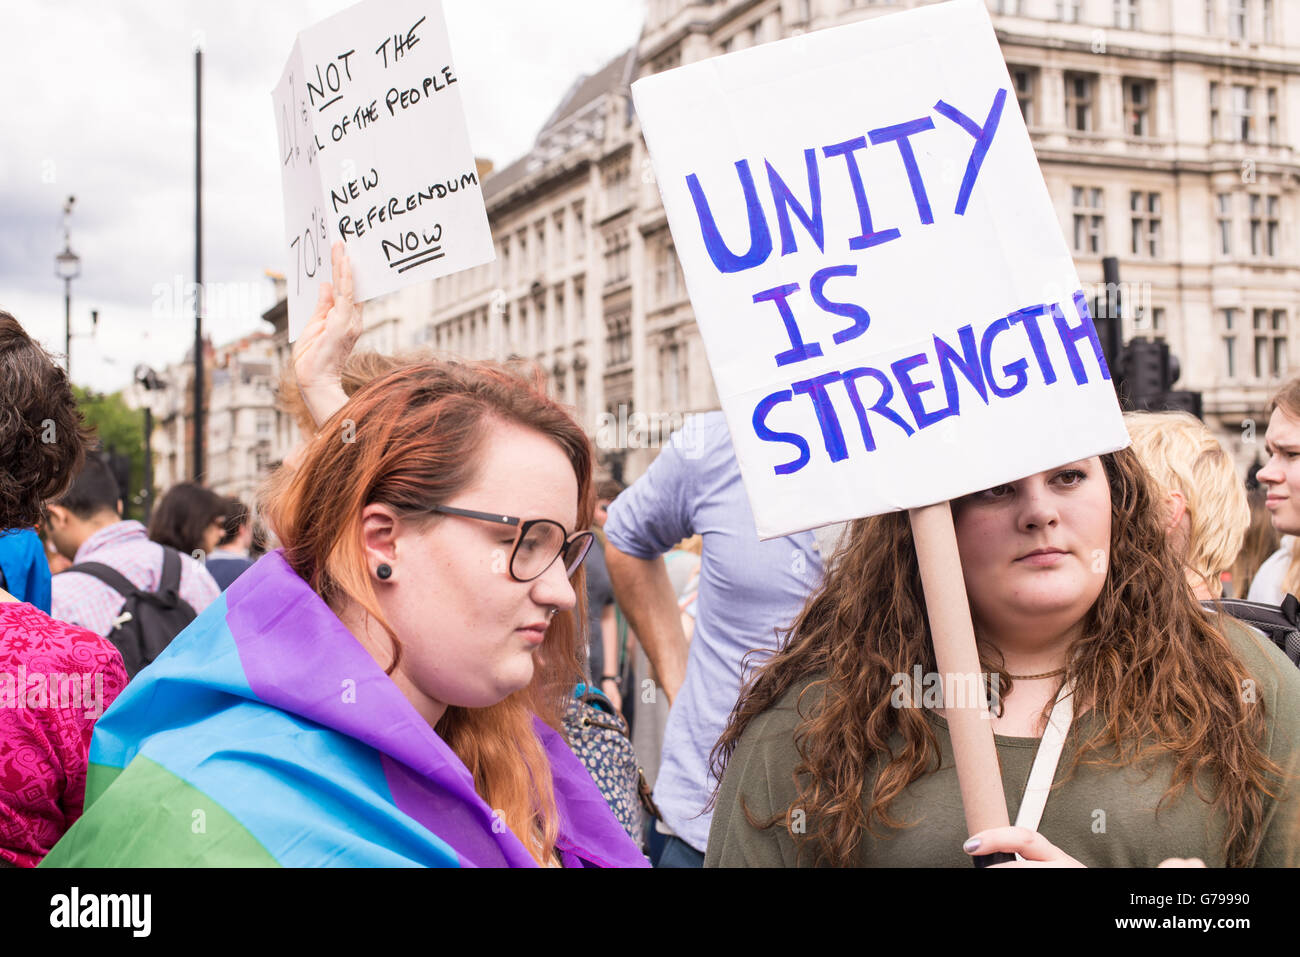 Westminster, Londres, Reino Unido. El 25 de junio, 2016. Las hembras jóvenes pro-siguen siendo los manifestantes llevaban cartel que dice "La unión hace la fuerza", como parte de las protestas contra brexit delante de la casa del parlamento en Londres, Reino Unido. Nicola ferrari /alamy live news Foto de stock